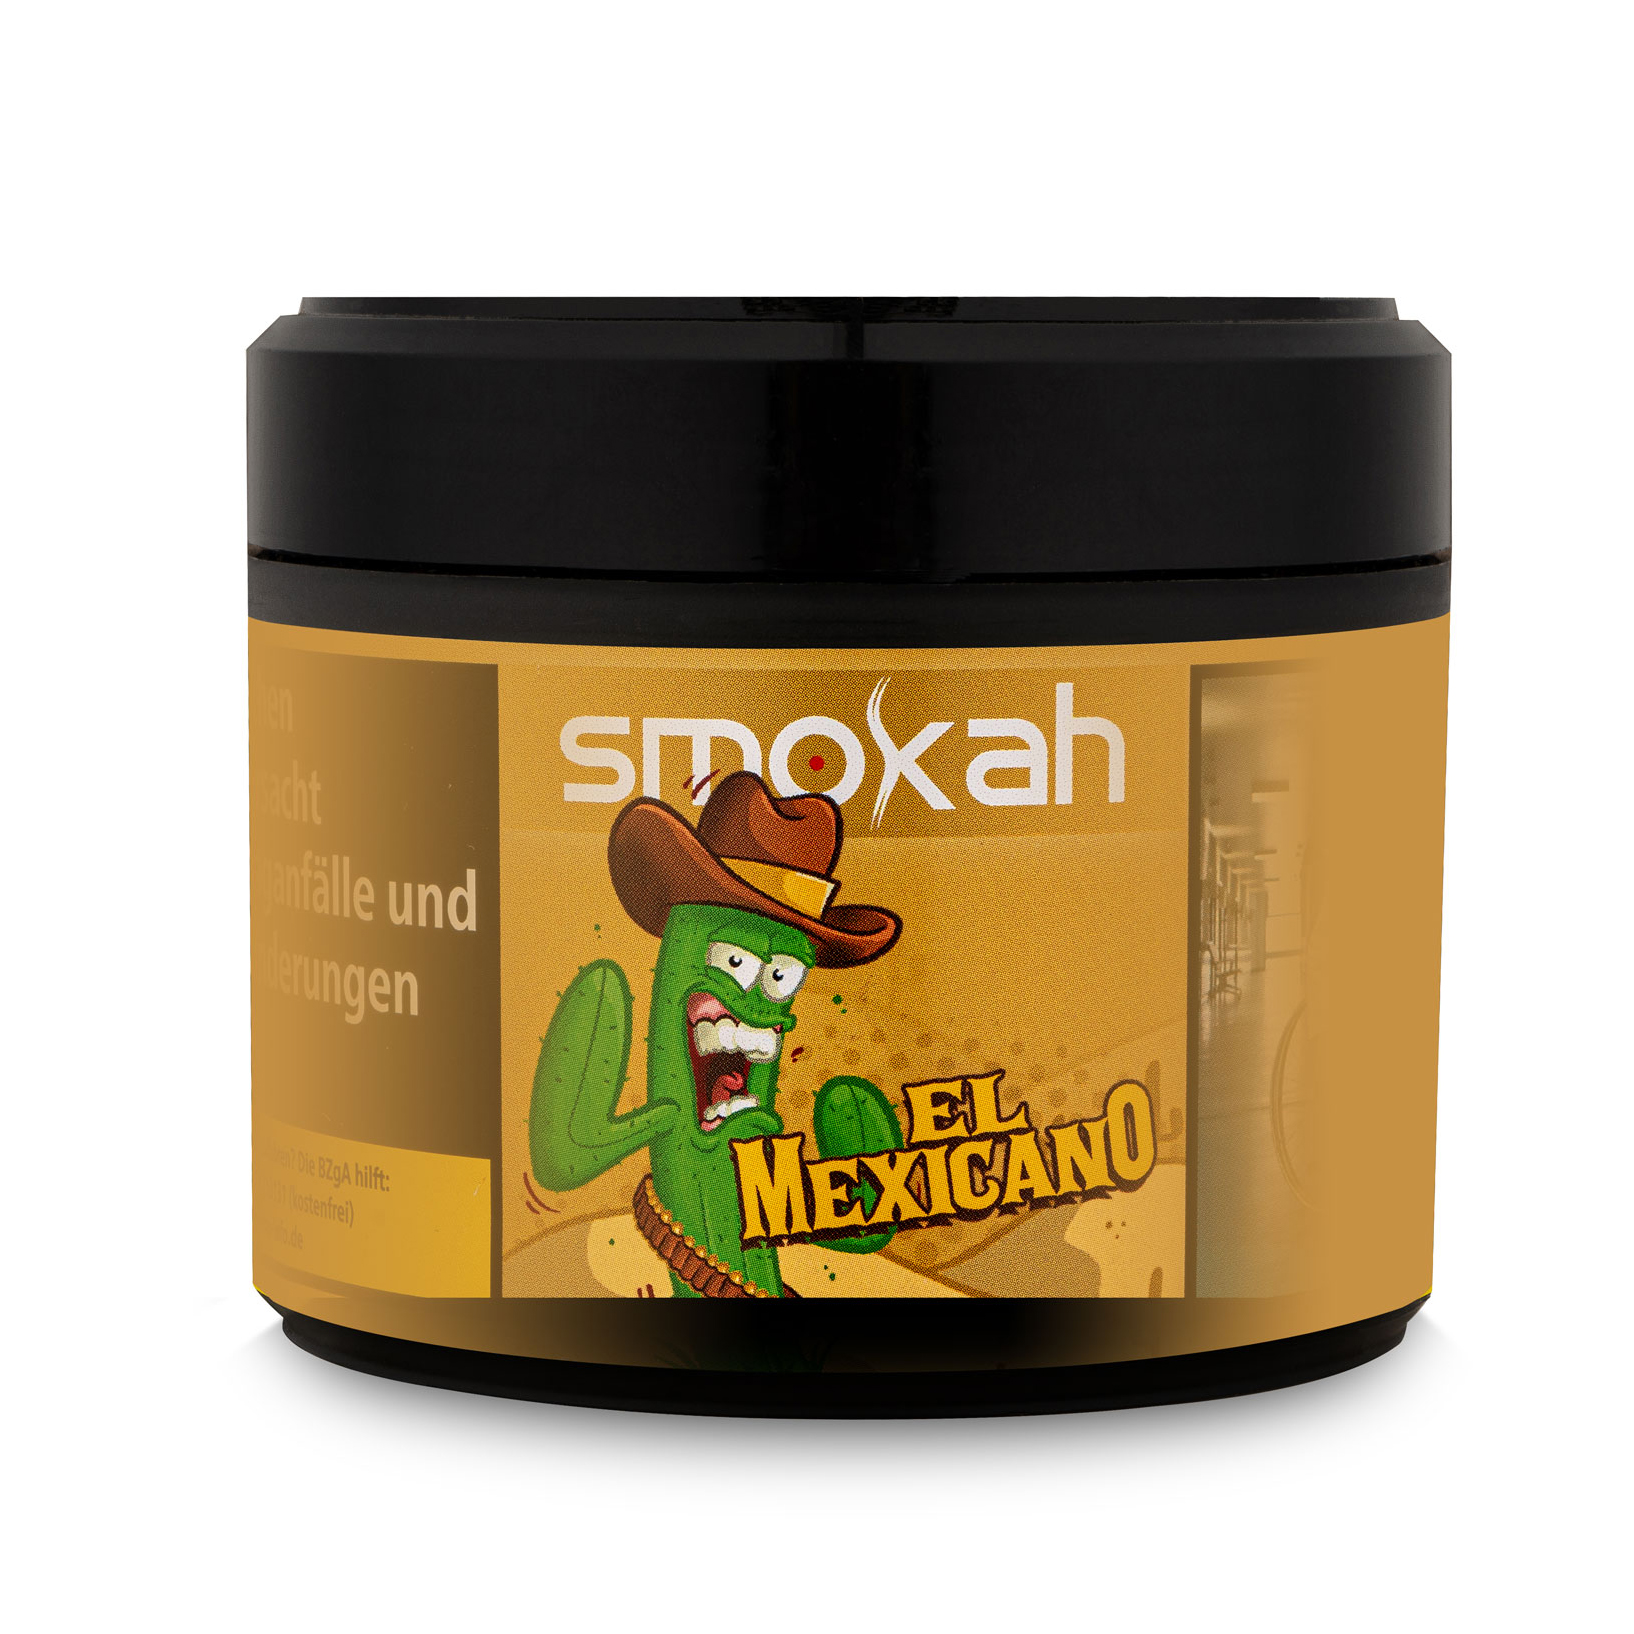 El Mexicano | Smokah Tobacco